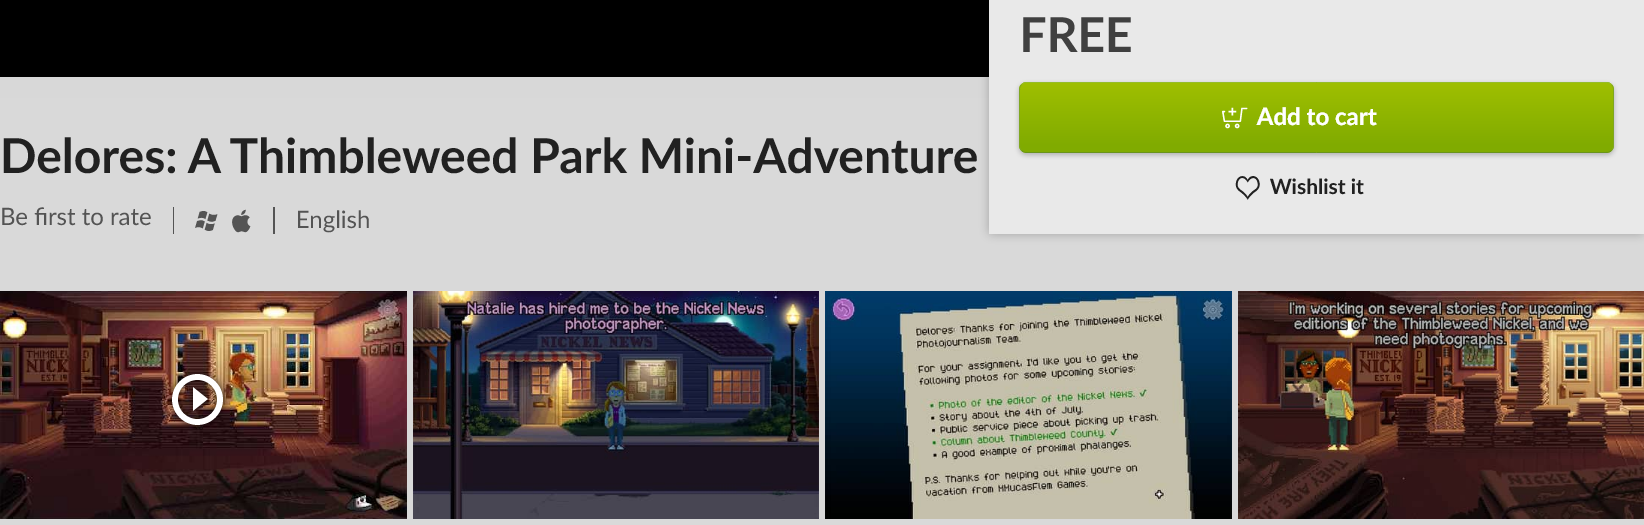 Screenshot_2020-06-03 Delores A Thimbleweed Park Mini-Adventure on GOG com.png